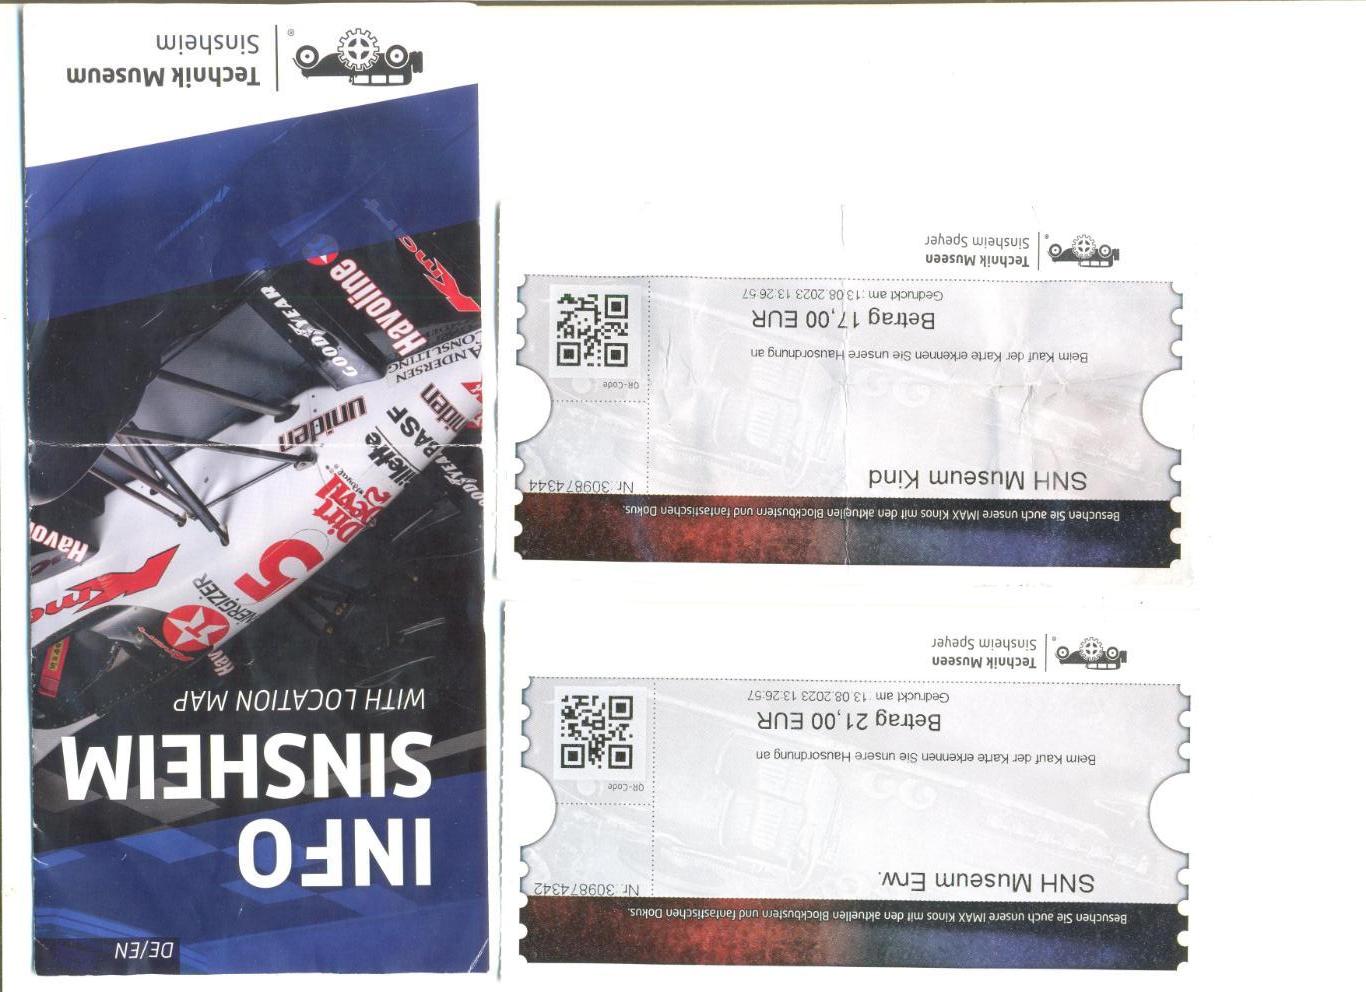 Билеты в музей техники в г. Зинсхайм (Германия) + проспект.